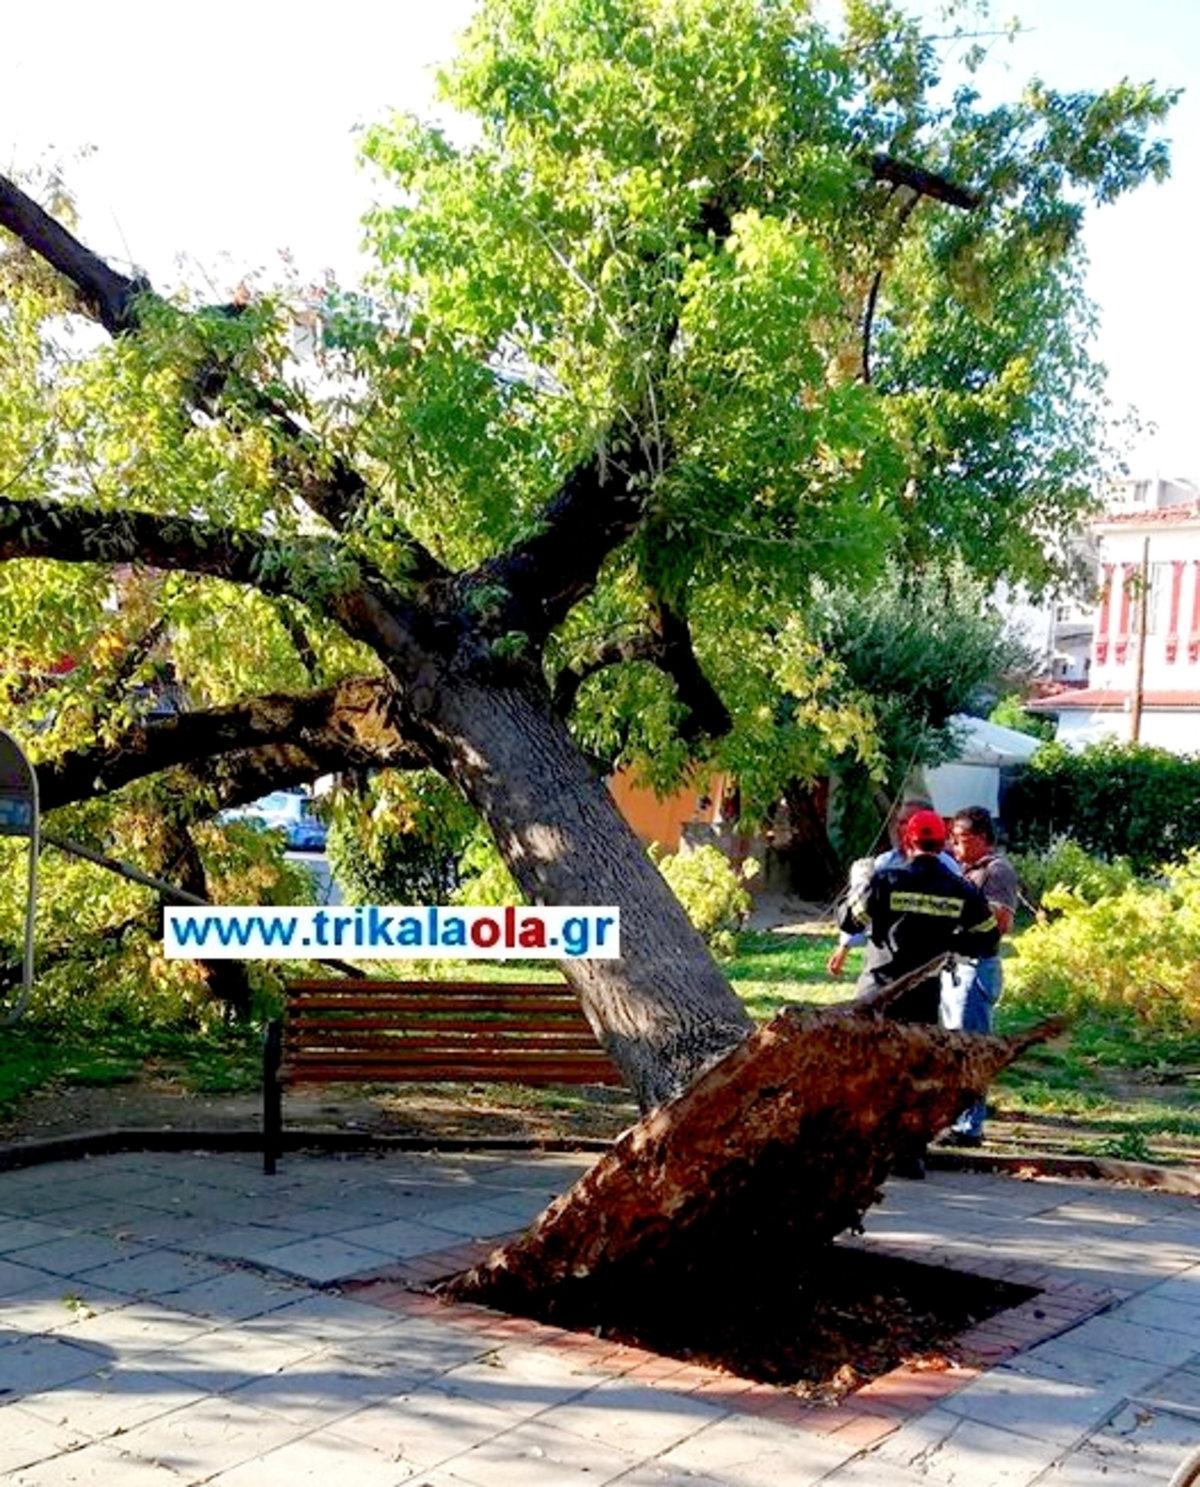 Τρίκαλα: Πτώση δέντρου σε πλατεία – Έπιναν καφέ και ξαφνικά είδαν μπροστά τους αυτές τις εικόνες [pics, vid]